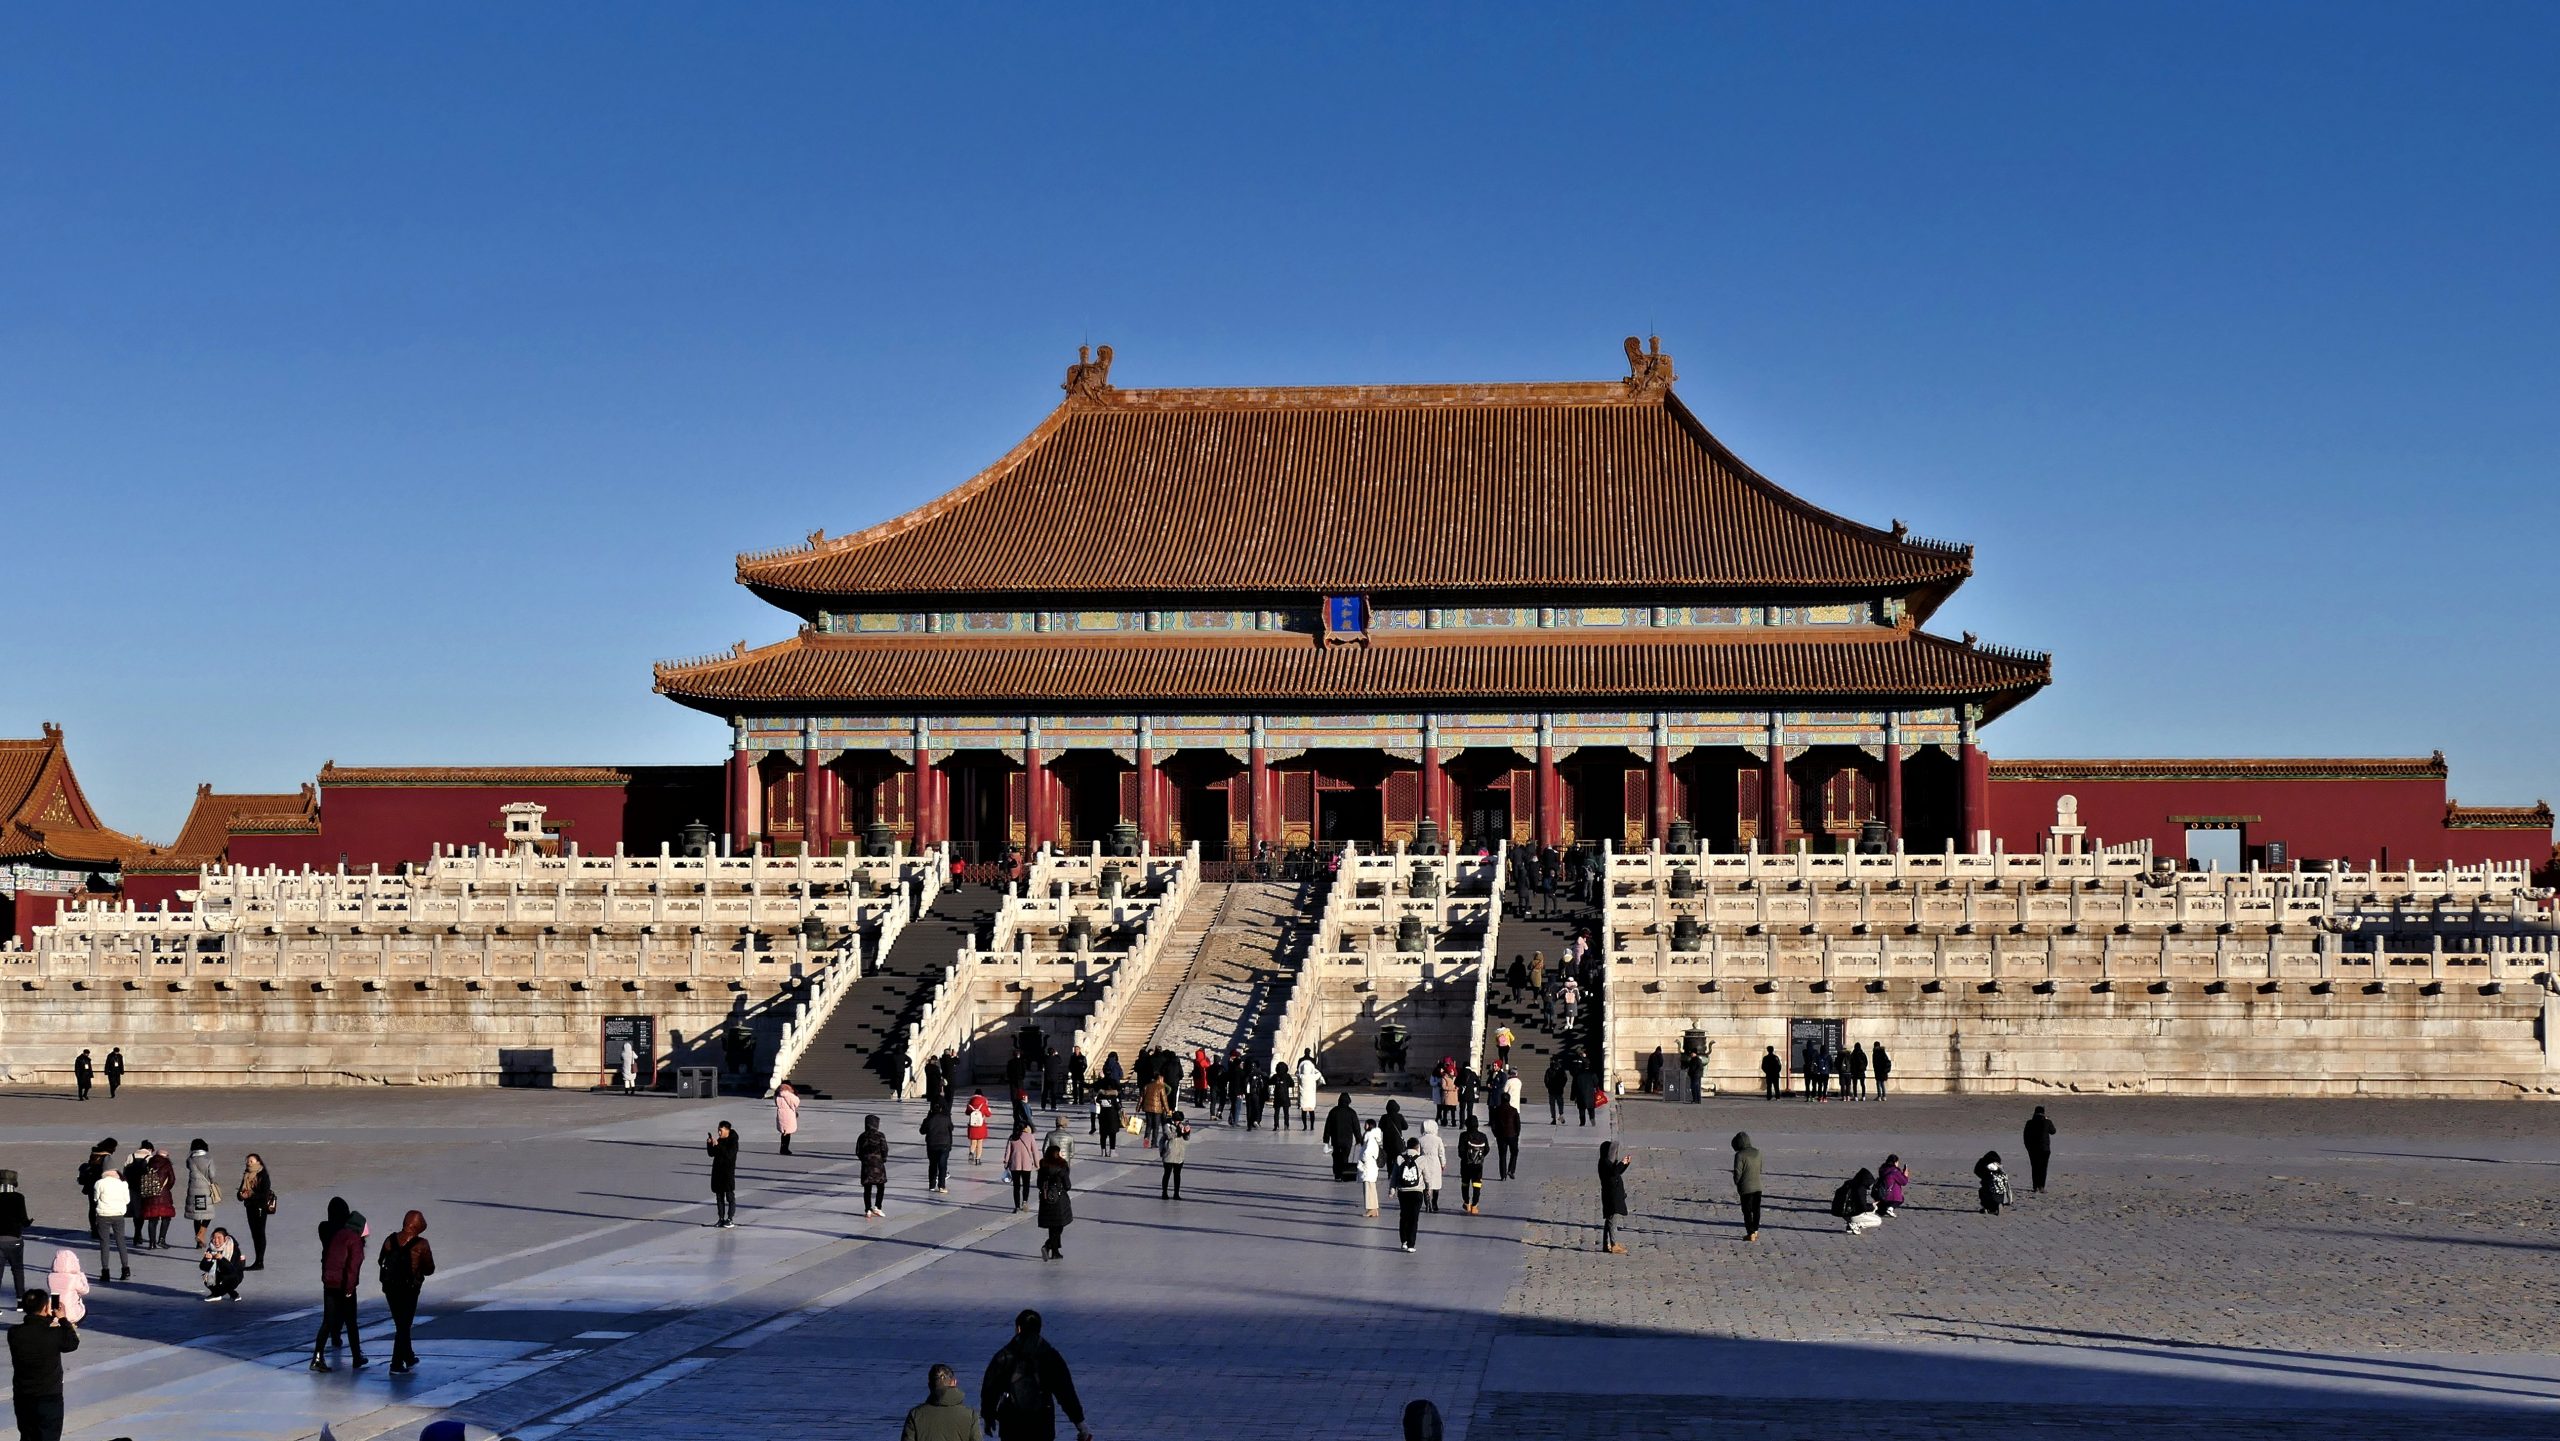 The Forbidden City, Beijing, China. Photo by Zbigniew Bielecki